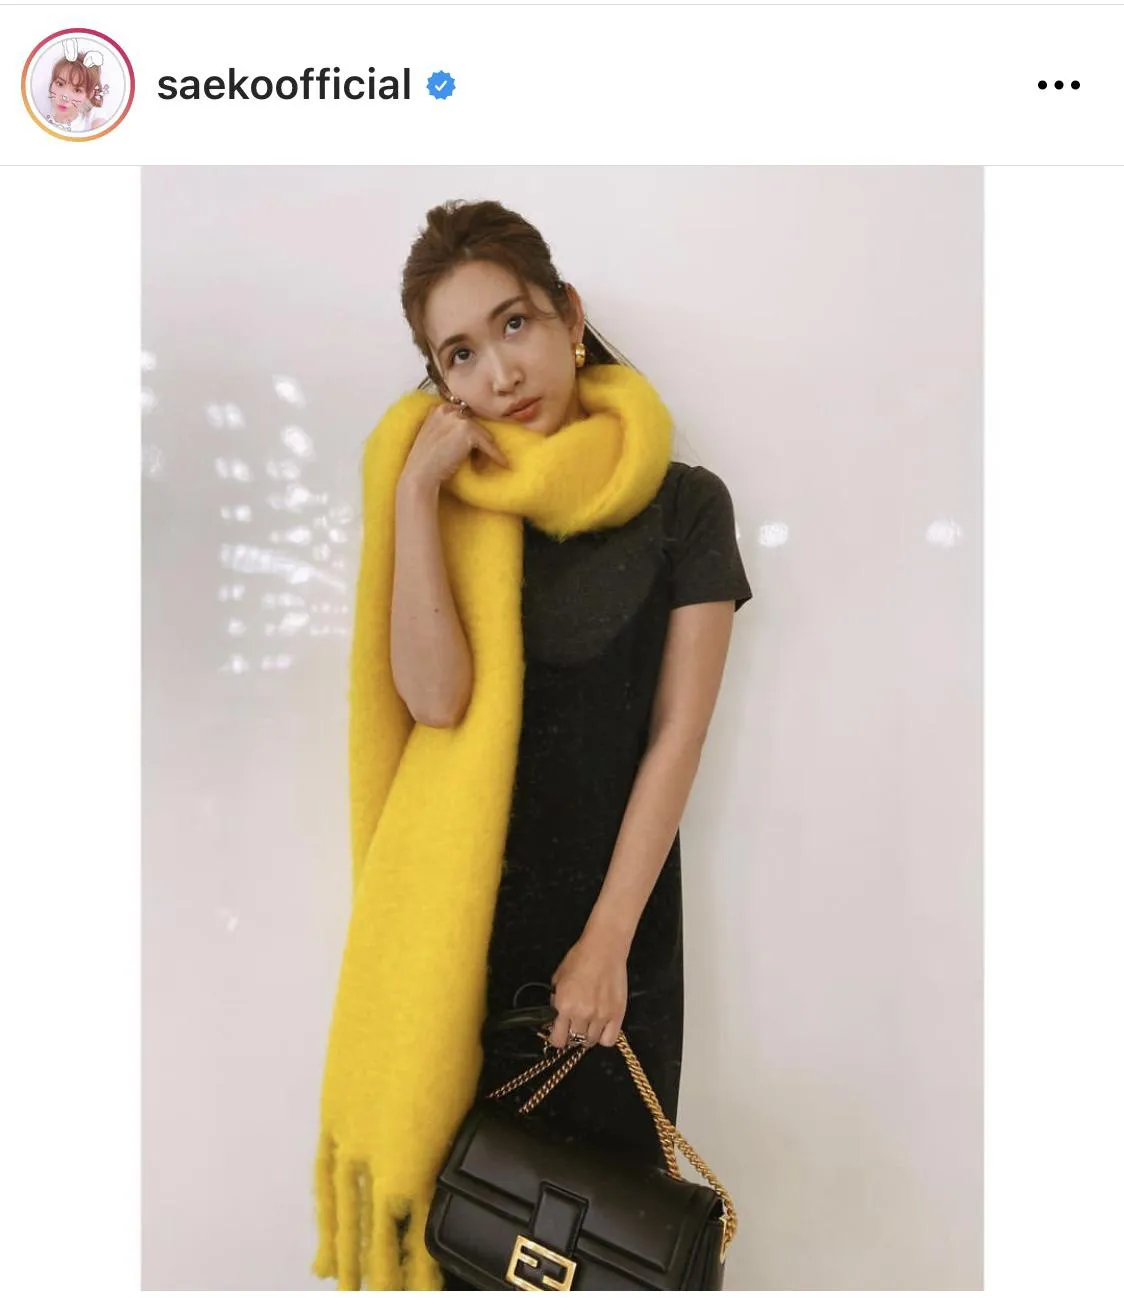 ※紗栄子公式Instagram(saekoofficial)のスクリーンショット